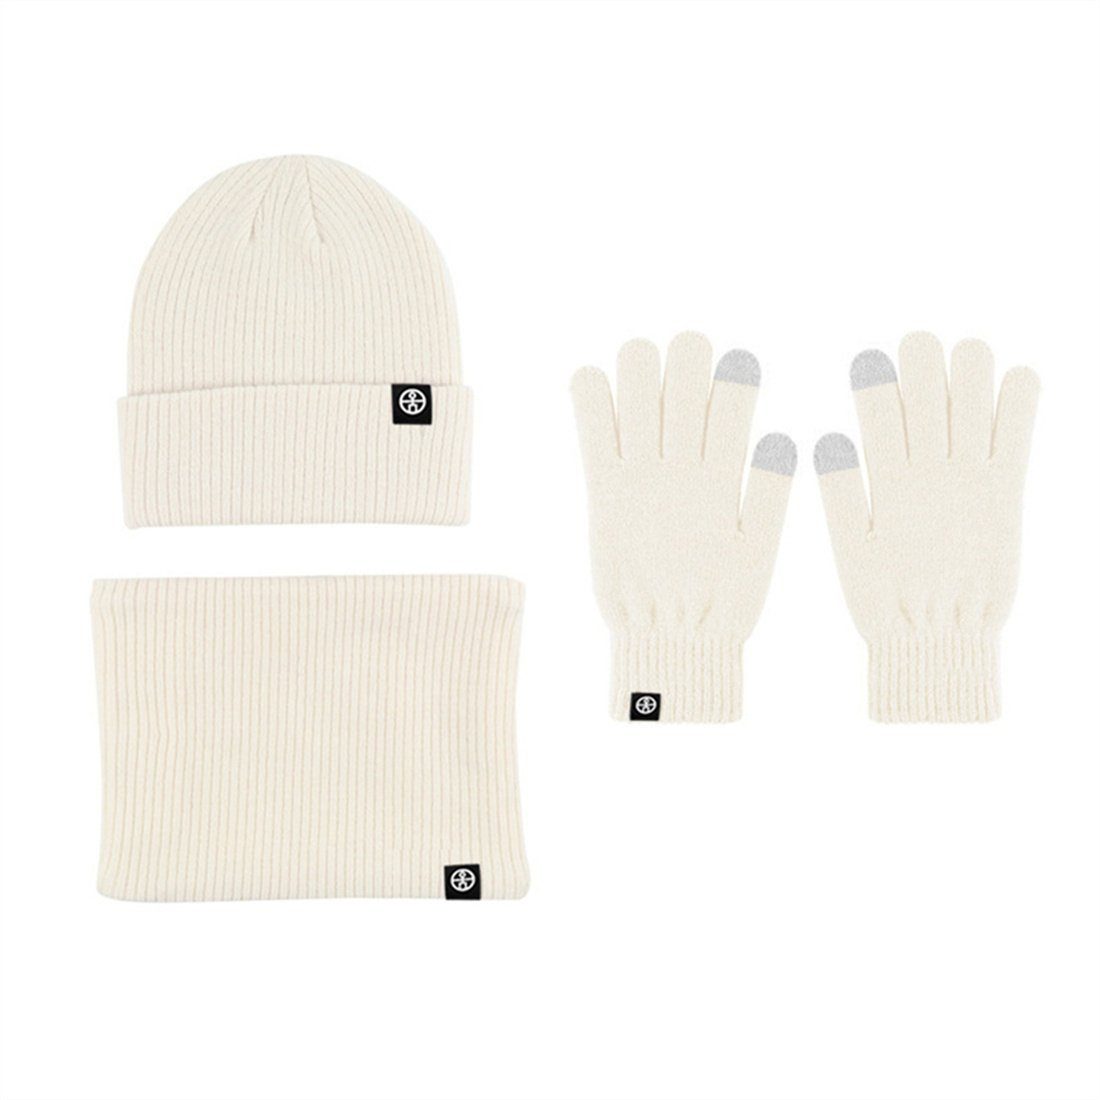 DÖRÖY Strickmütze Unisex Winter Warmth 3 Piece Set, Strickmütze + Schal + Handschuhe Beige